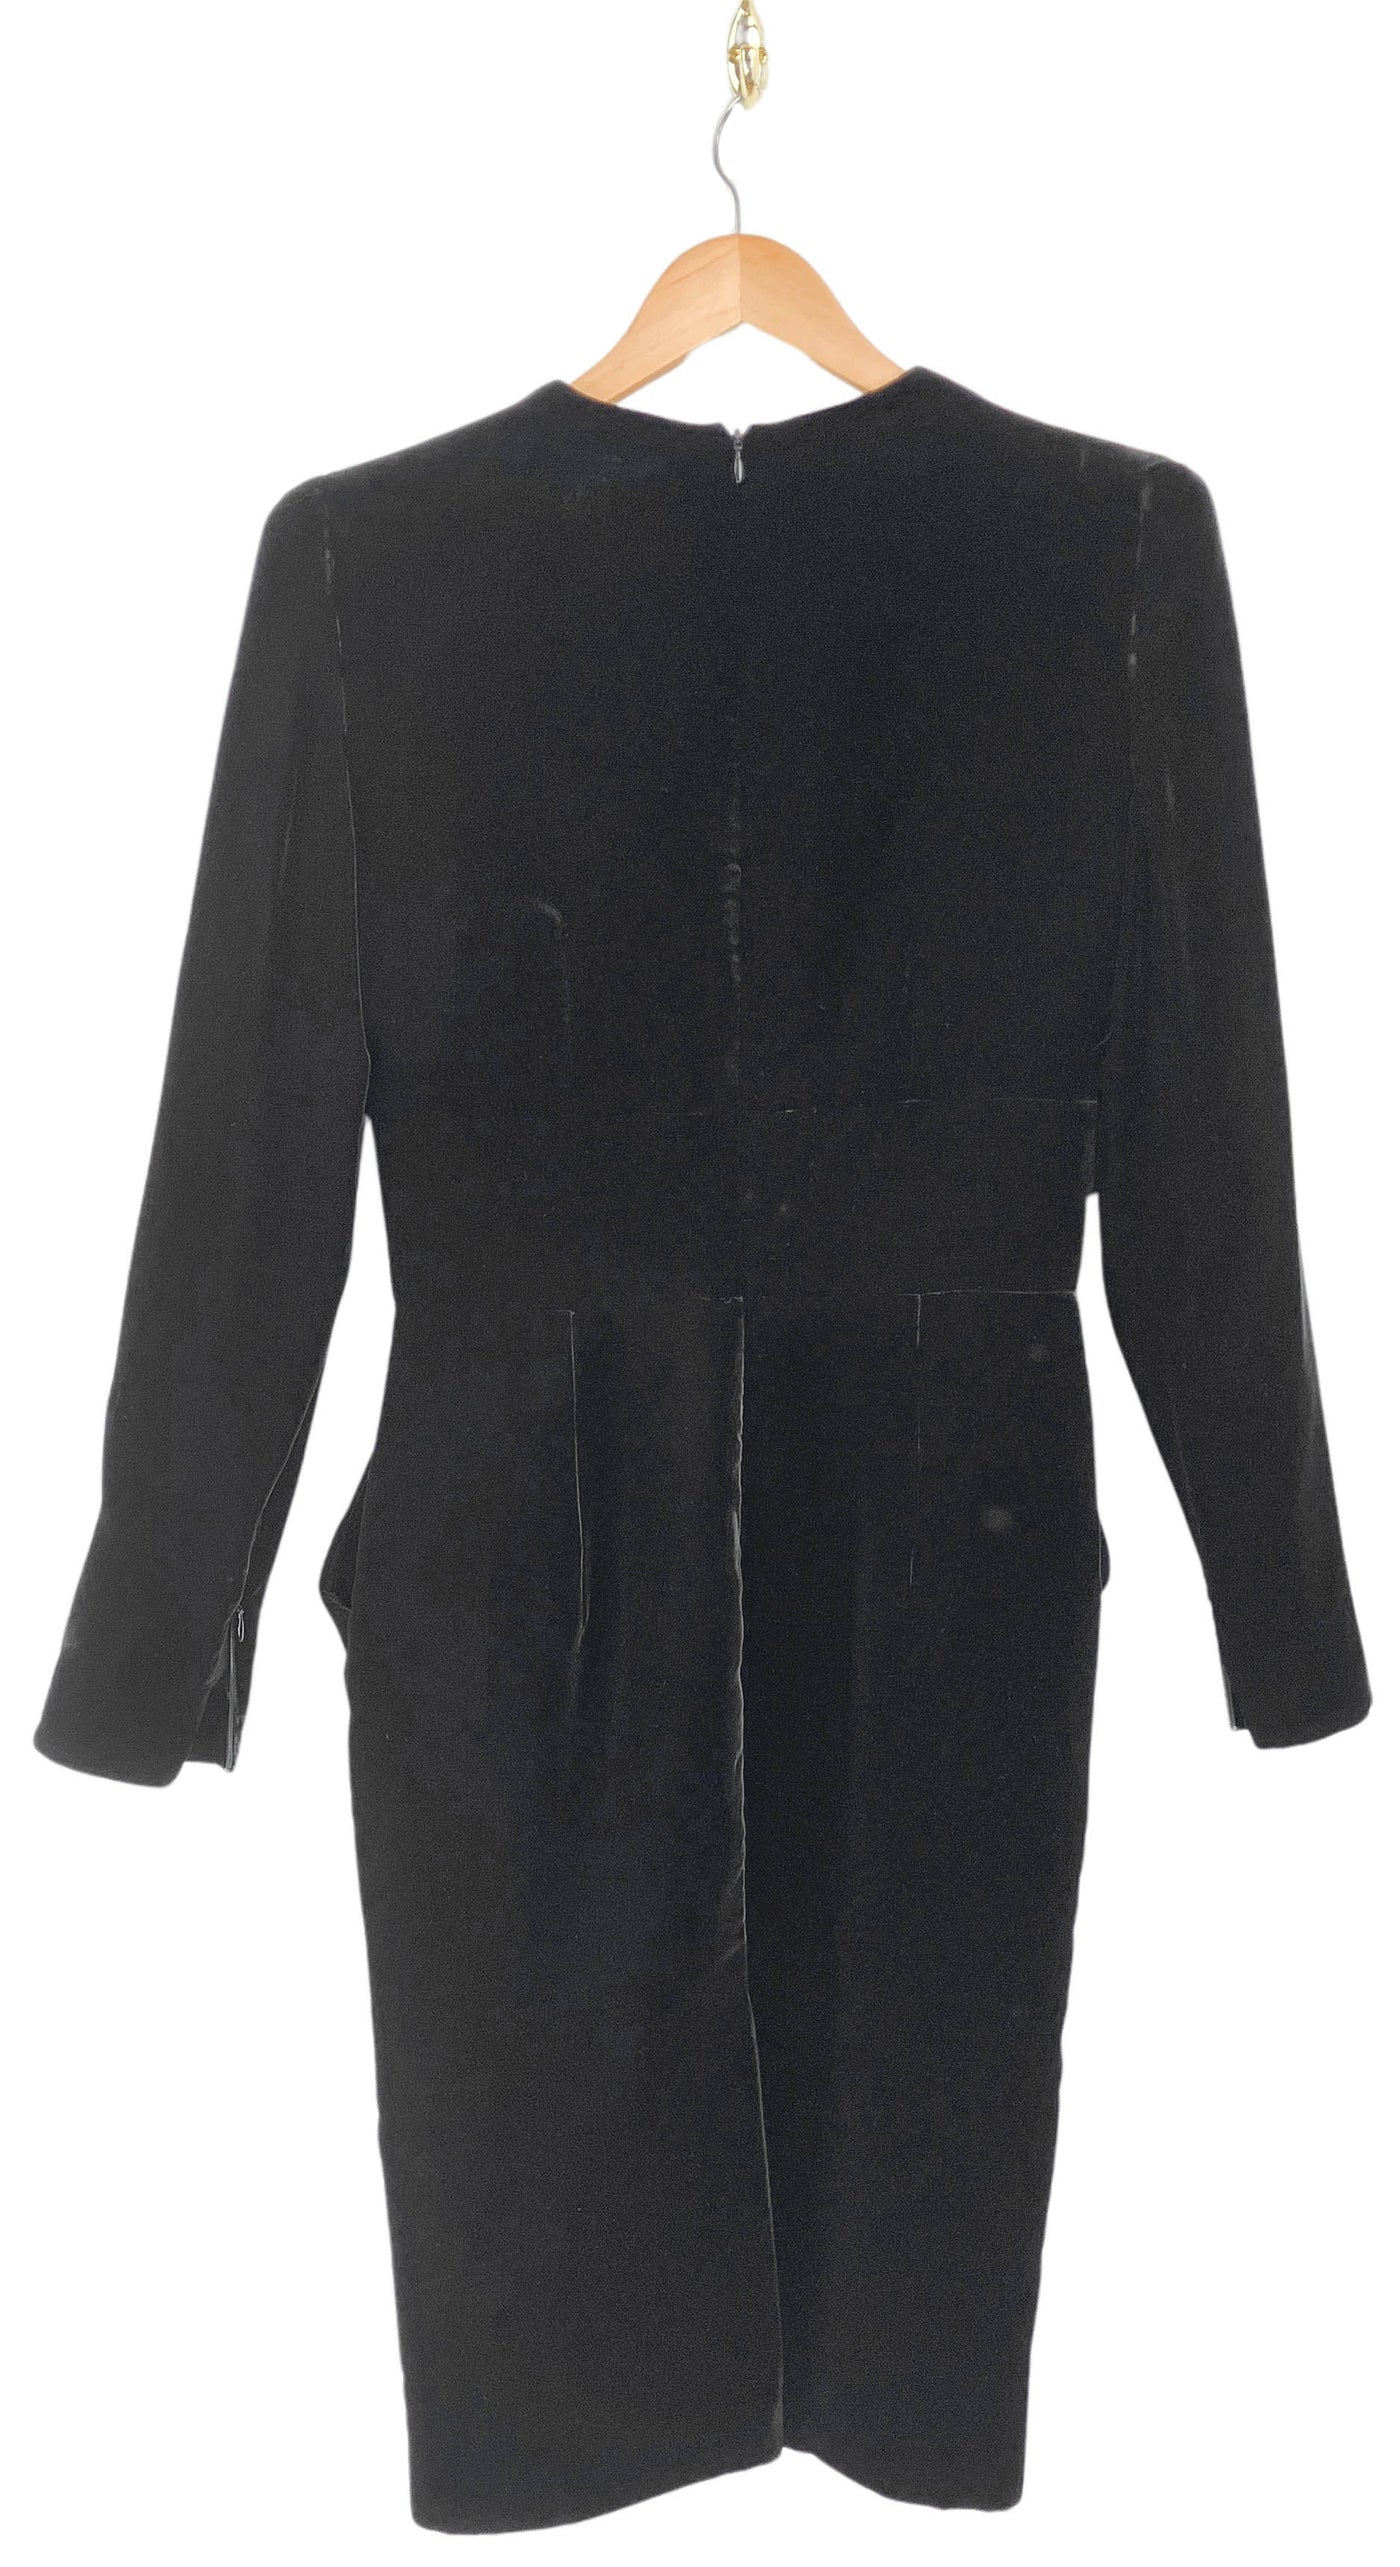 Alexandre Vauthier Long Sleeve Velvet Midi Dress in Black - Discounts on Alexandre Vauthier at UAL